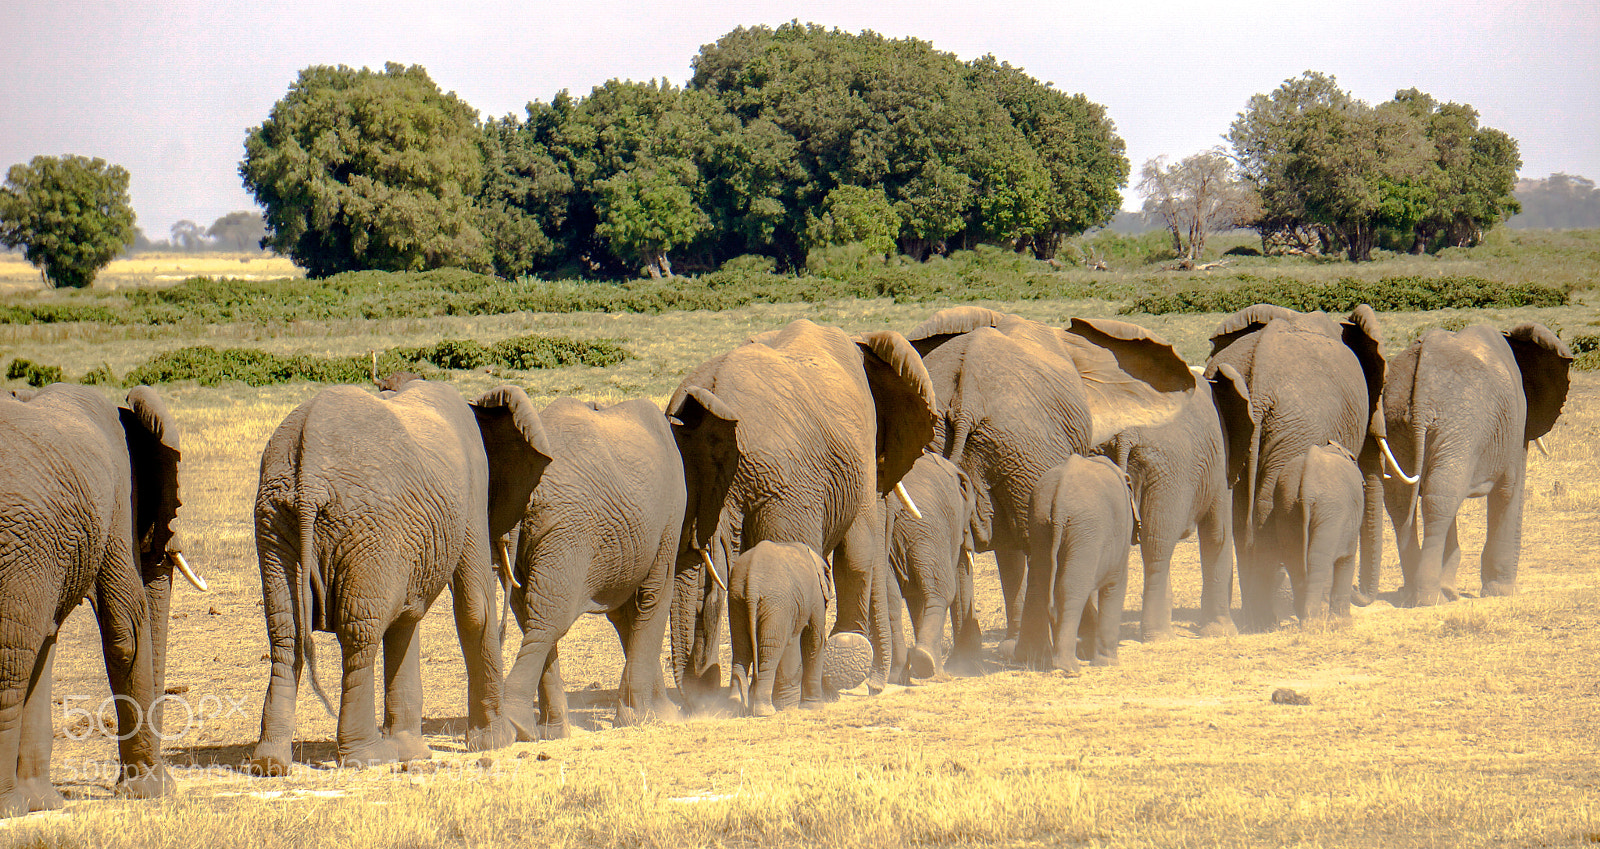 Sony Alpha NEX-6 sample photo. Elephants in a row photography